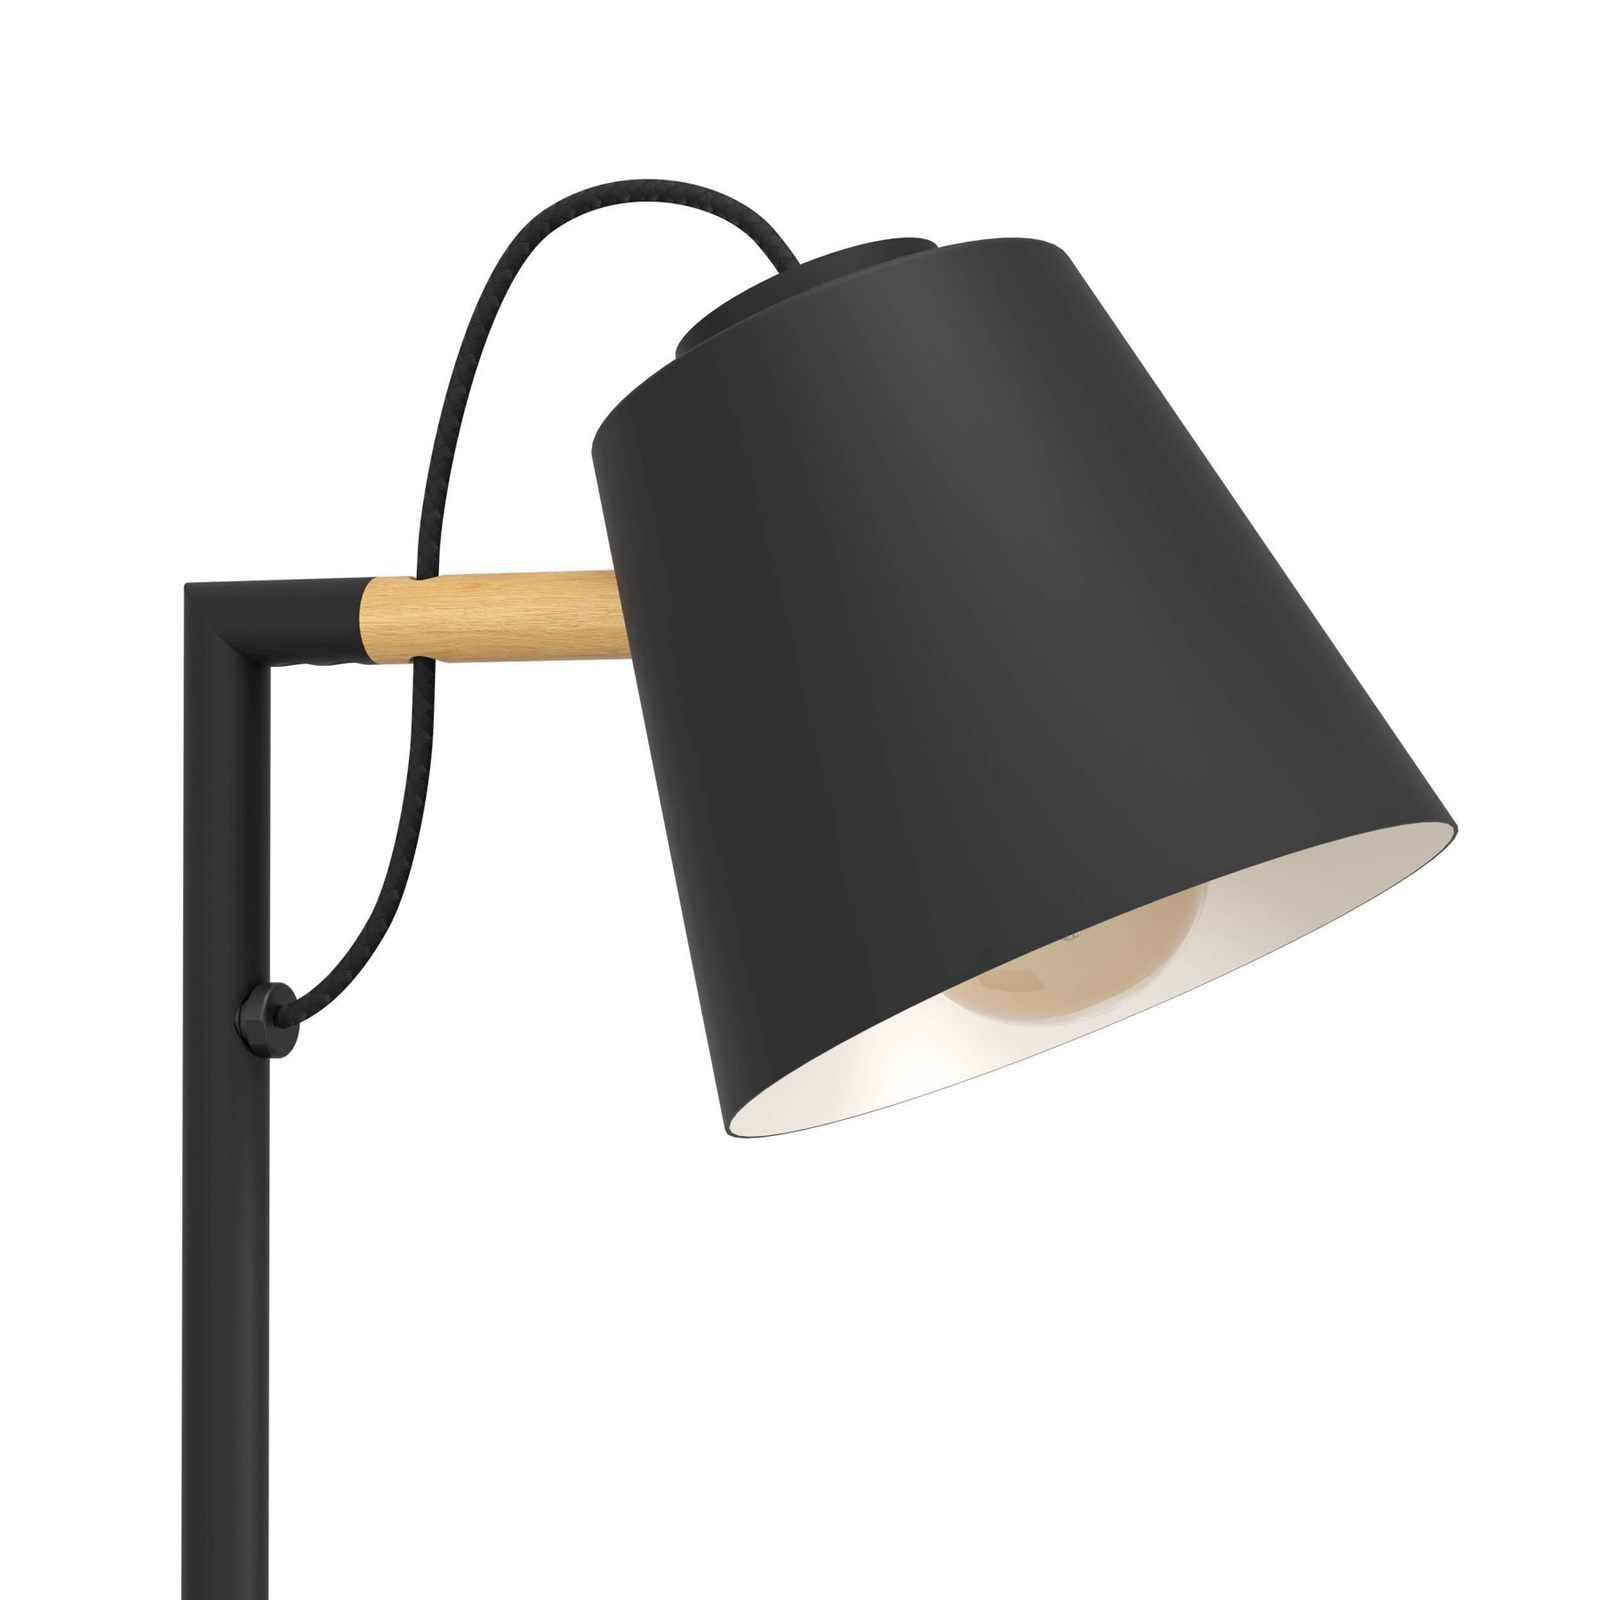 Podna lampa Lacey, visina 159,5 cm, crna, čelik